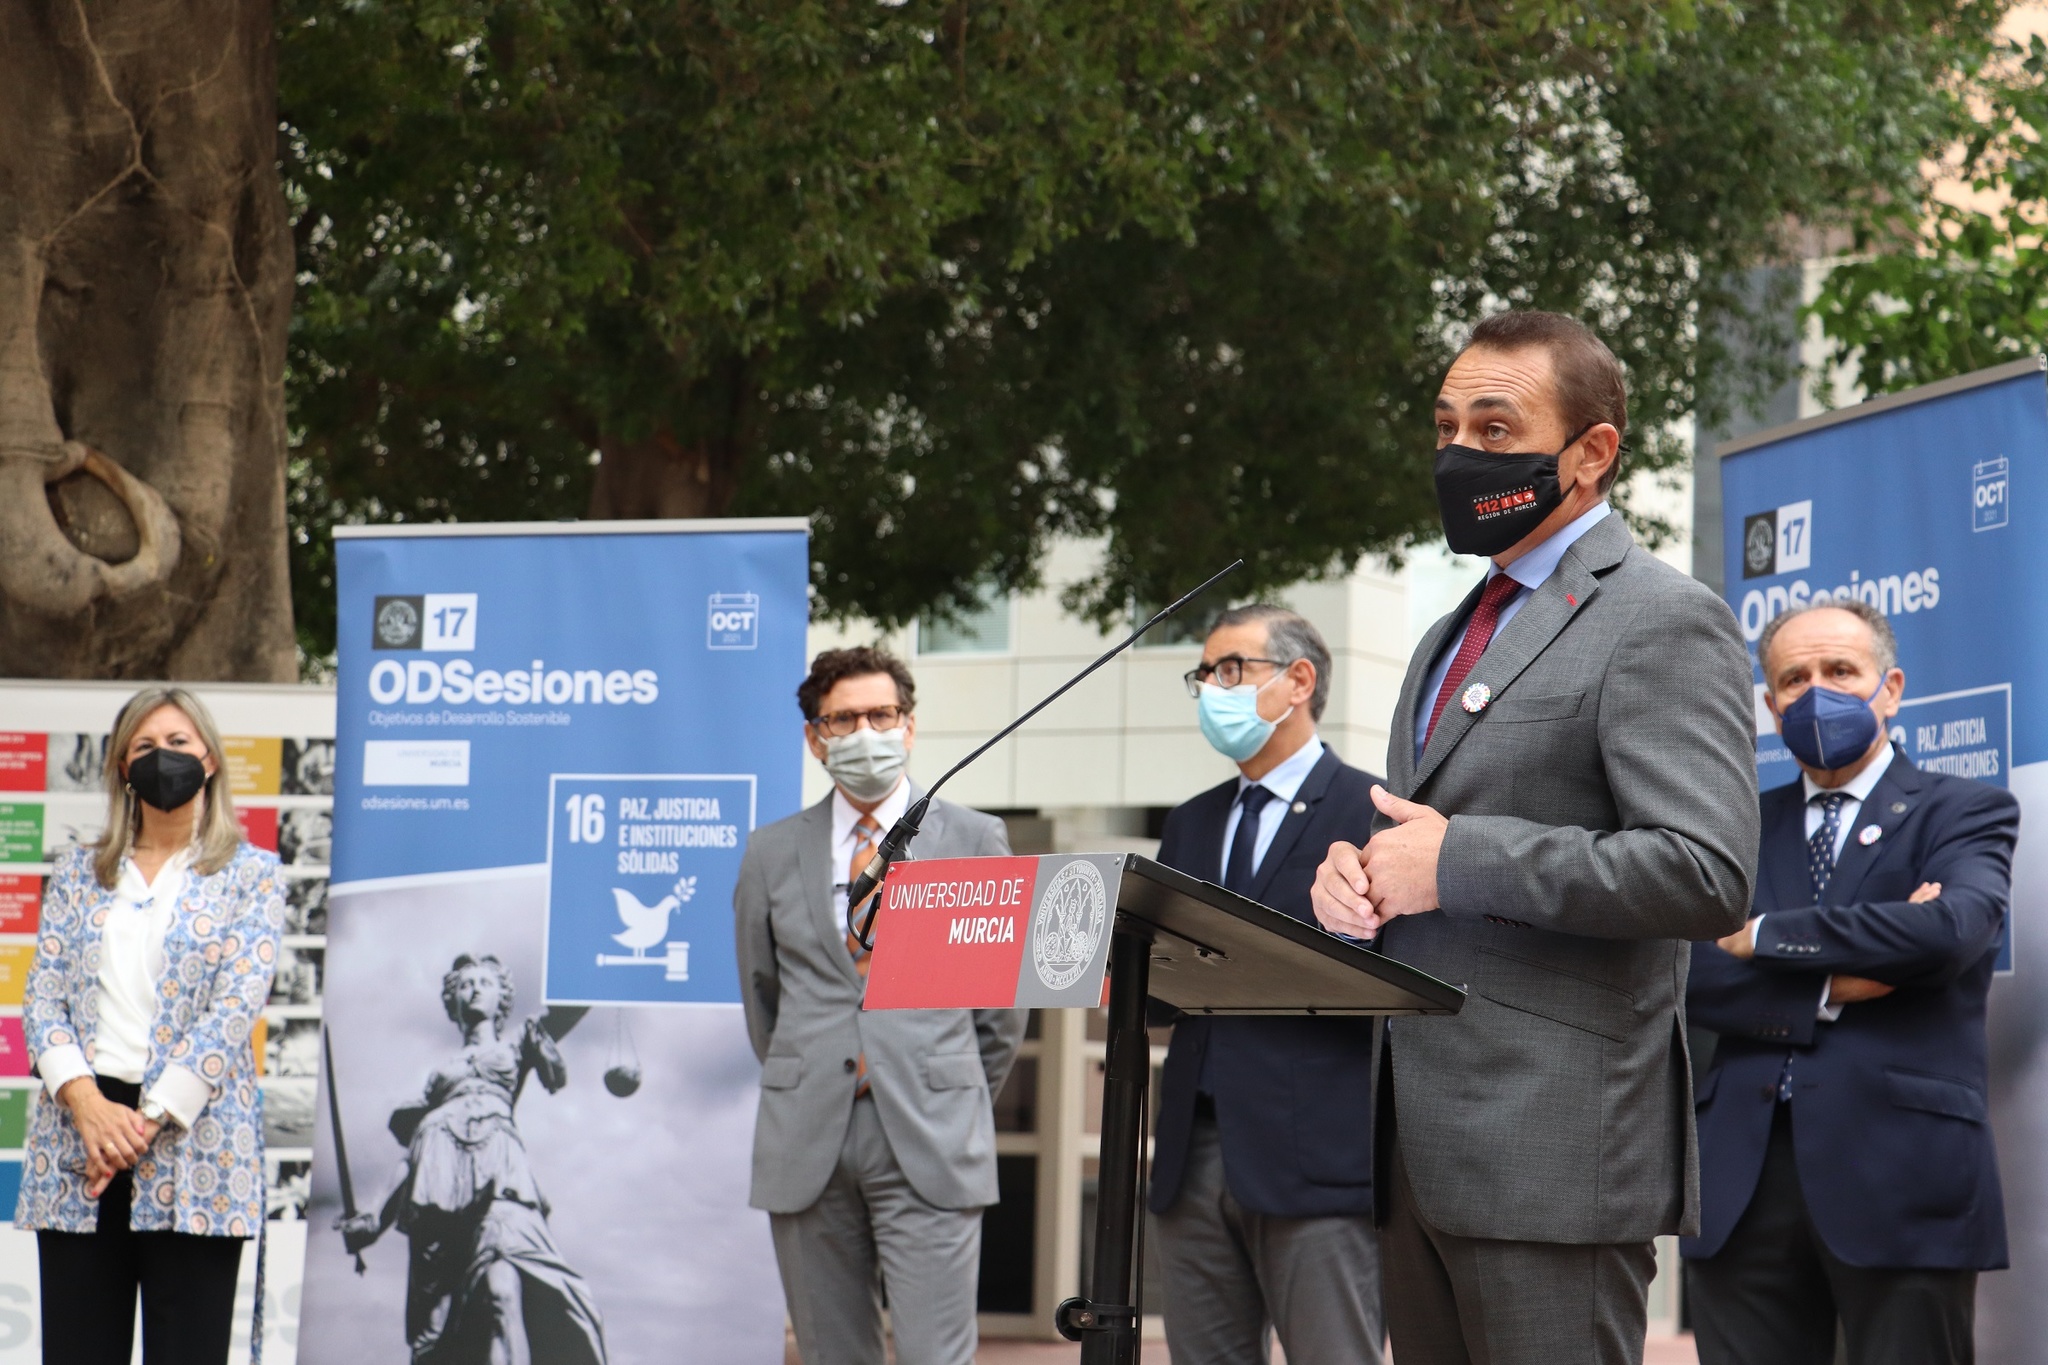 EL consejero de Transparencia, Participación y Administración Pública, Antonio Sánchez Lorente, en el acto de inauguración del ODS16 organizado por la Universidad de Murcia